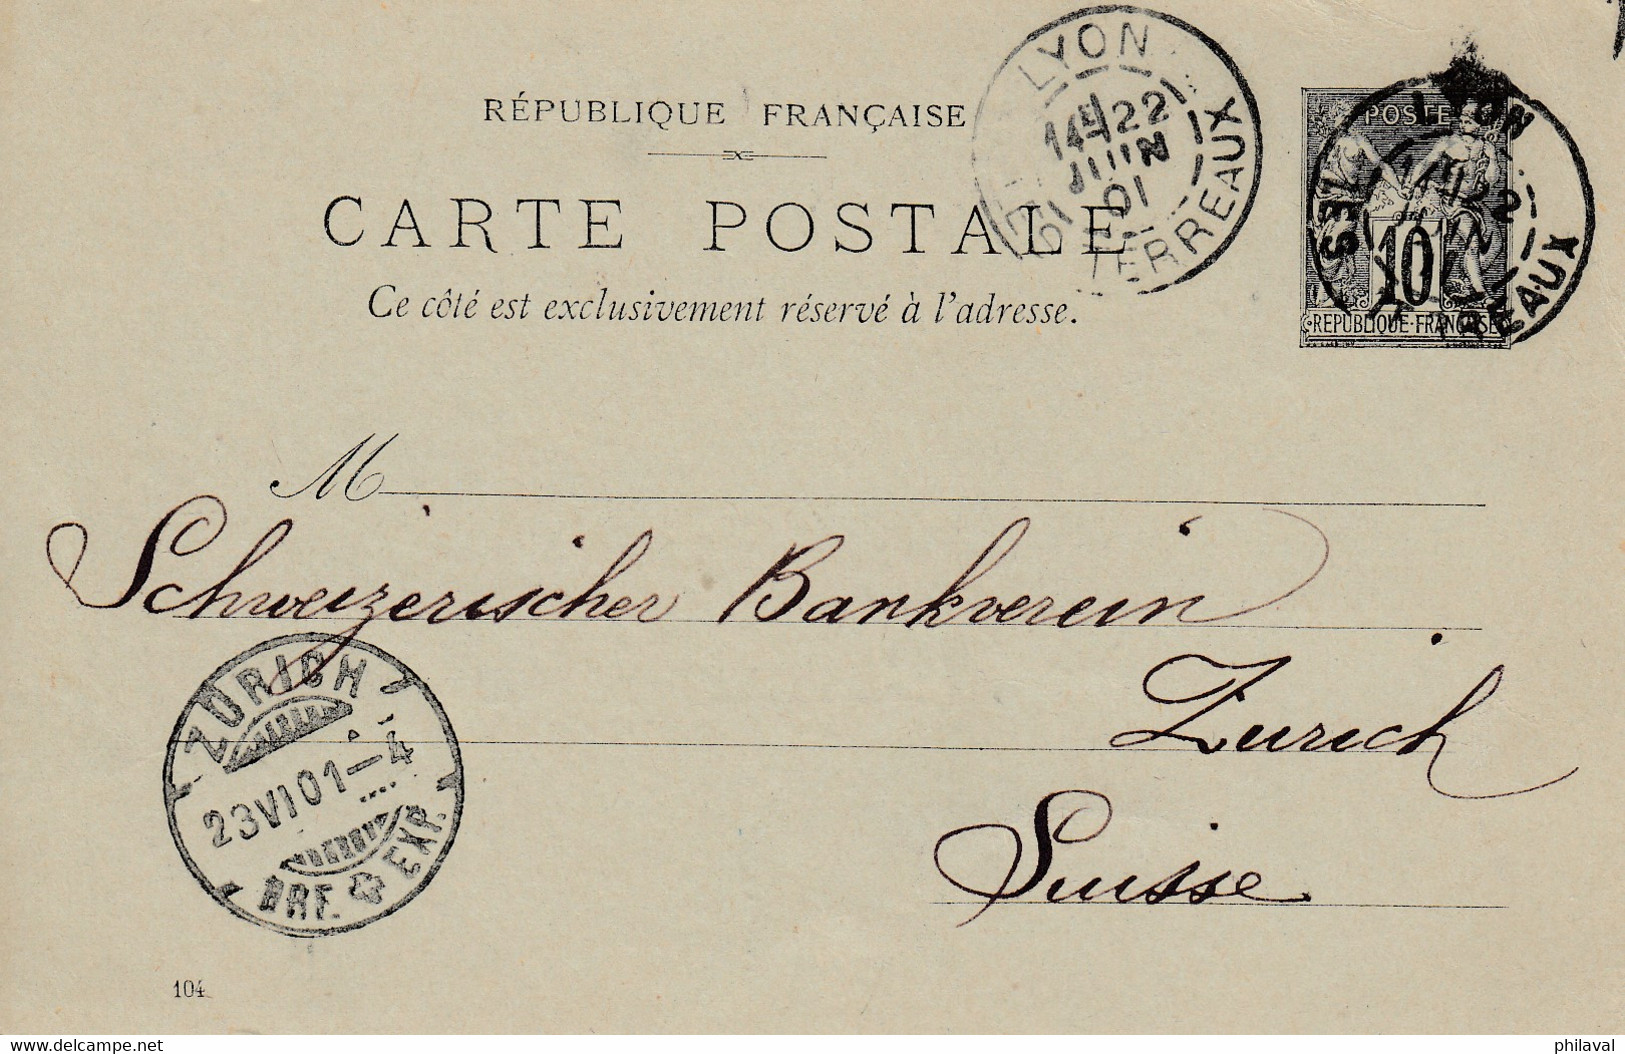 Lot de 8 cartes  - Entiers postaux de France